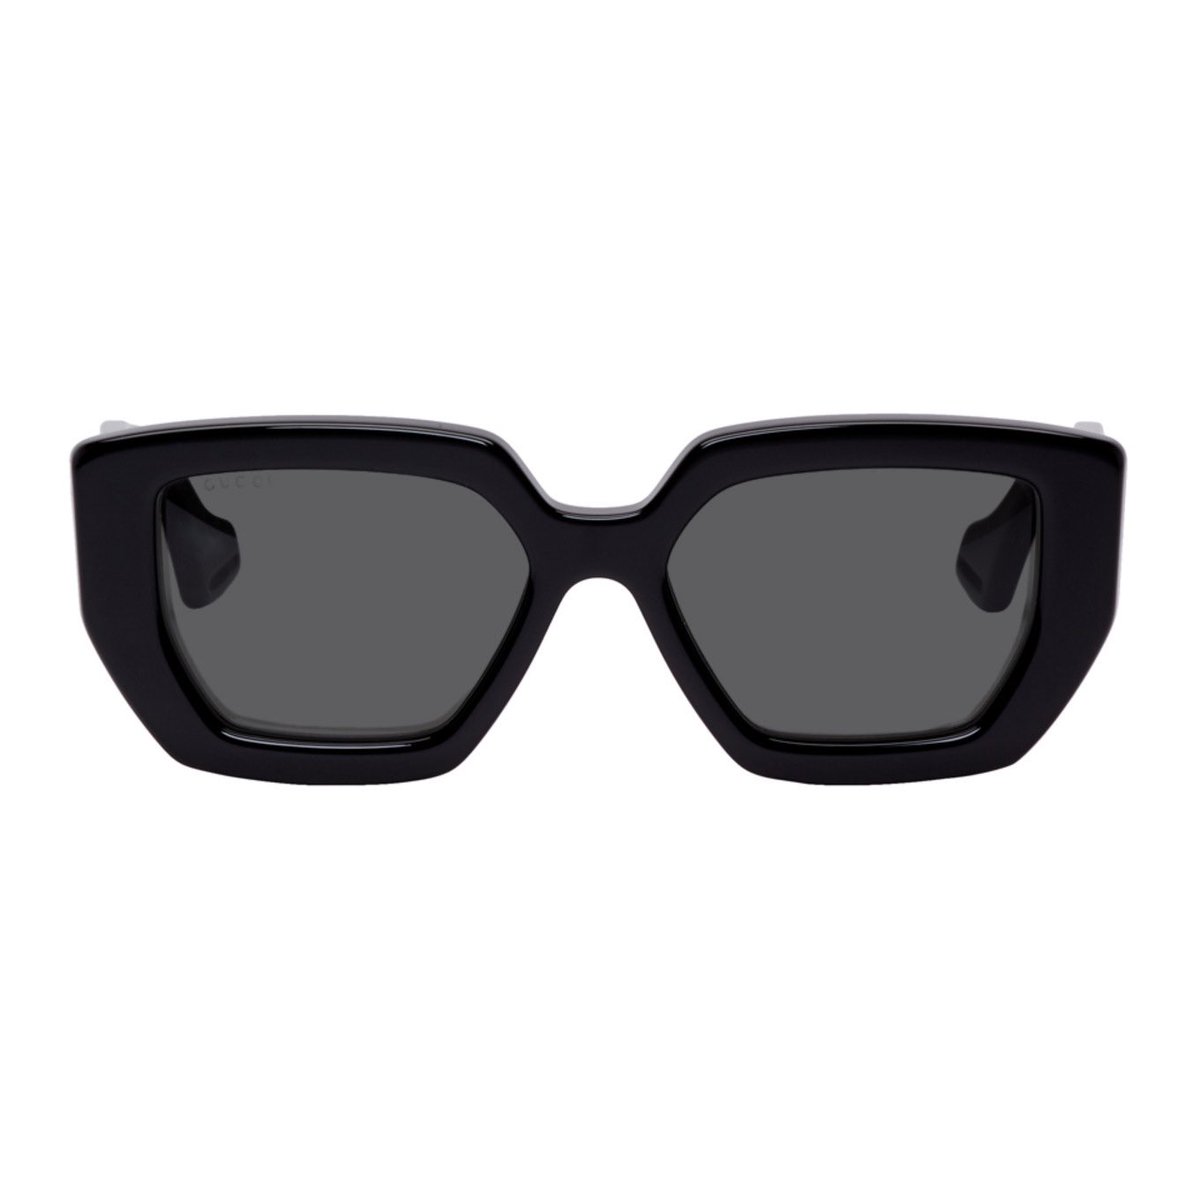 gucci sunglasses black square